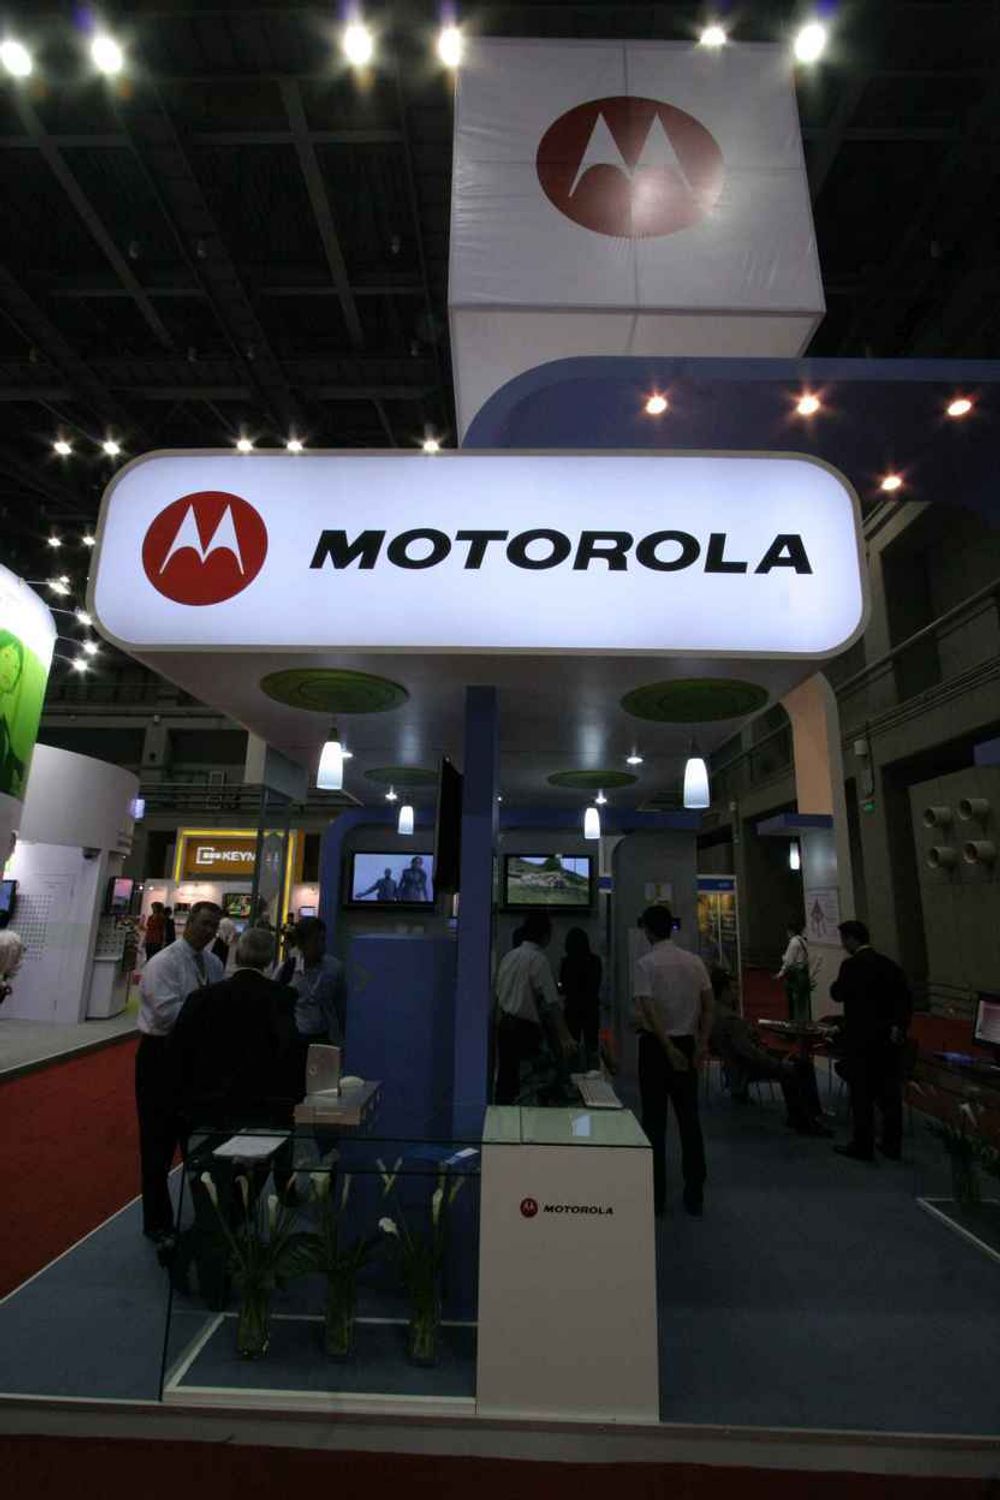 STØRST PÅ MOBIL I KINA: Amerikanske Motorola er den produsenten som selger mest mobiltelefoner i Kina som er et gigantmarked. Nå vil de prøve å gjenta suksessen også på bredbånd, men det spørs om ikke deres løsninger er for dyre og kompliserte for kinesere flest.